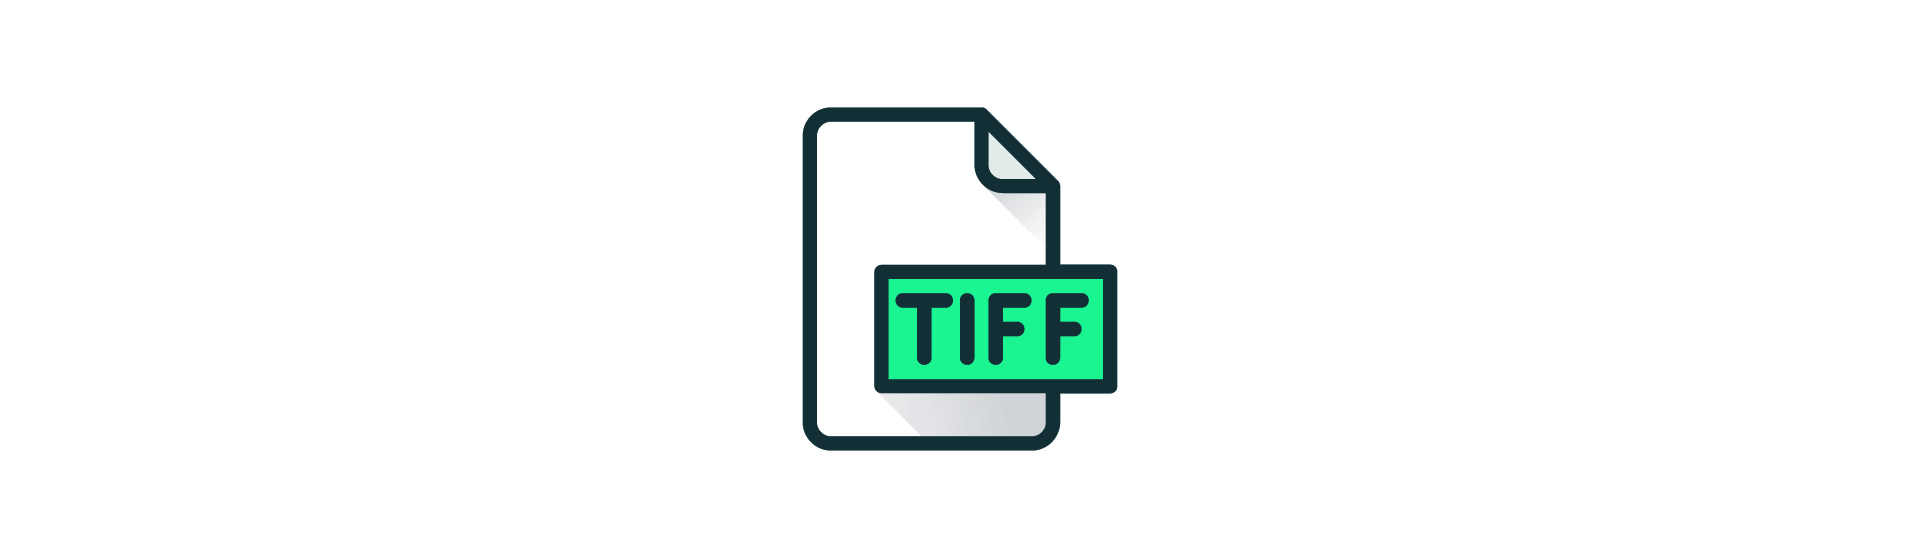 TIFF file. TIFF.